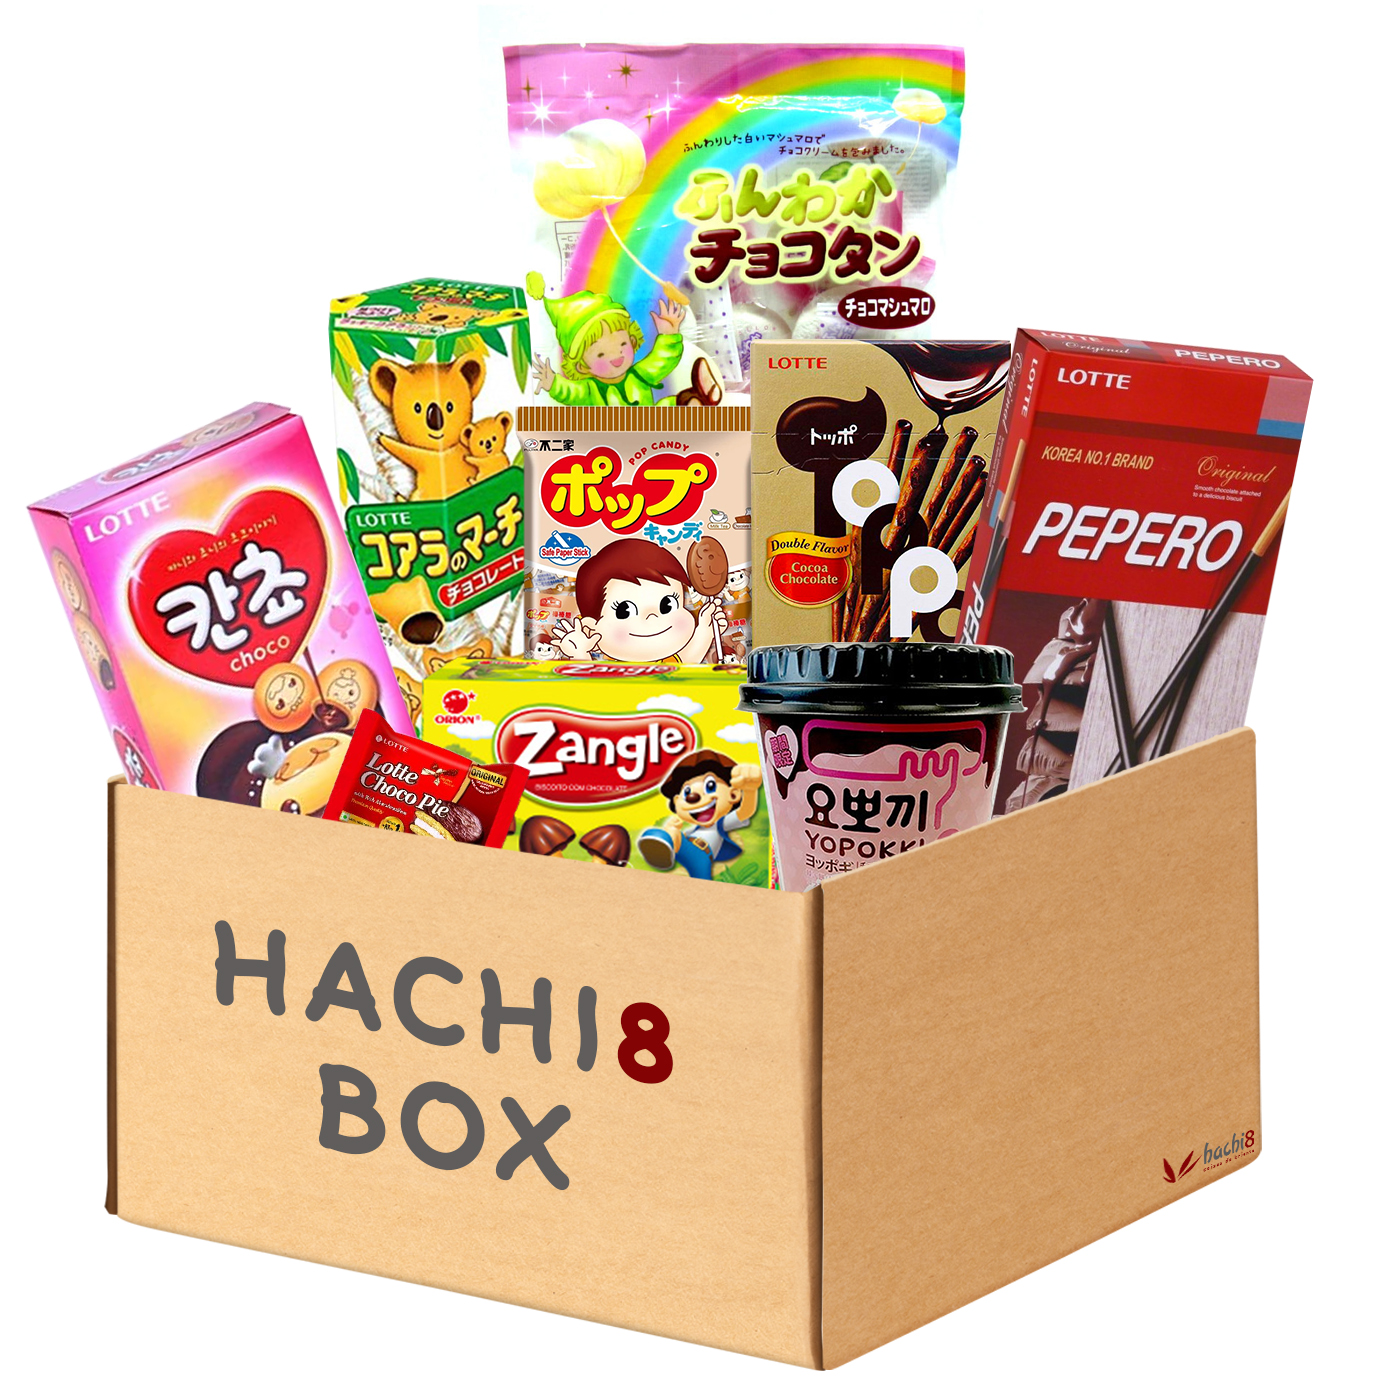 Kit de Doces e Biscoitos Hachi8 Box  - Versão Chocolate